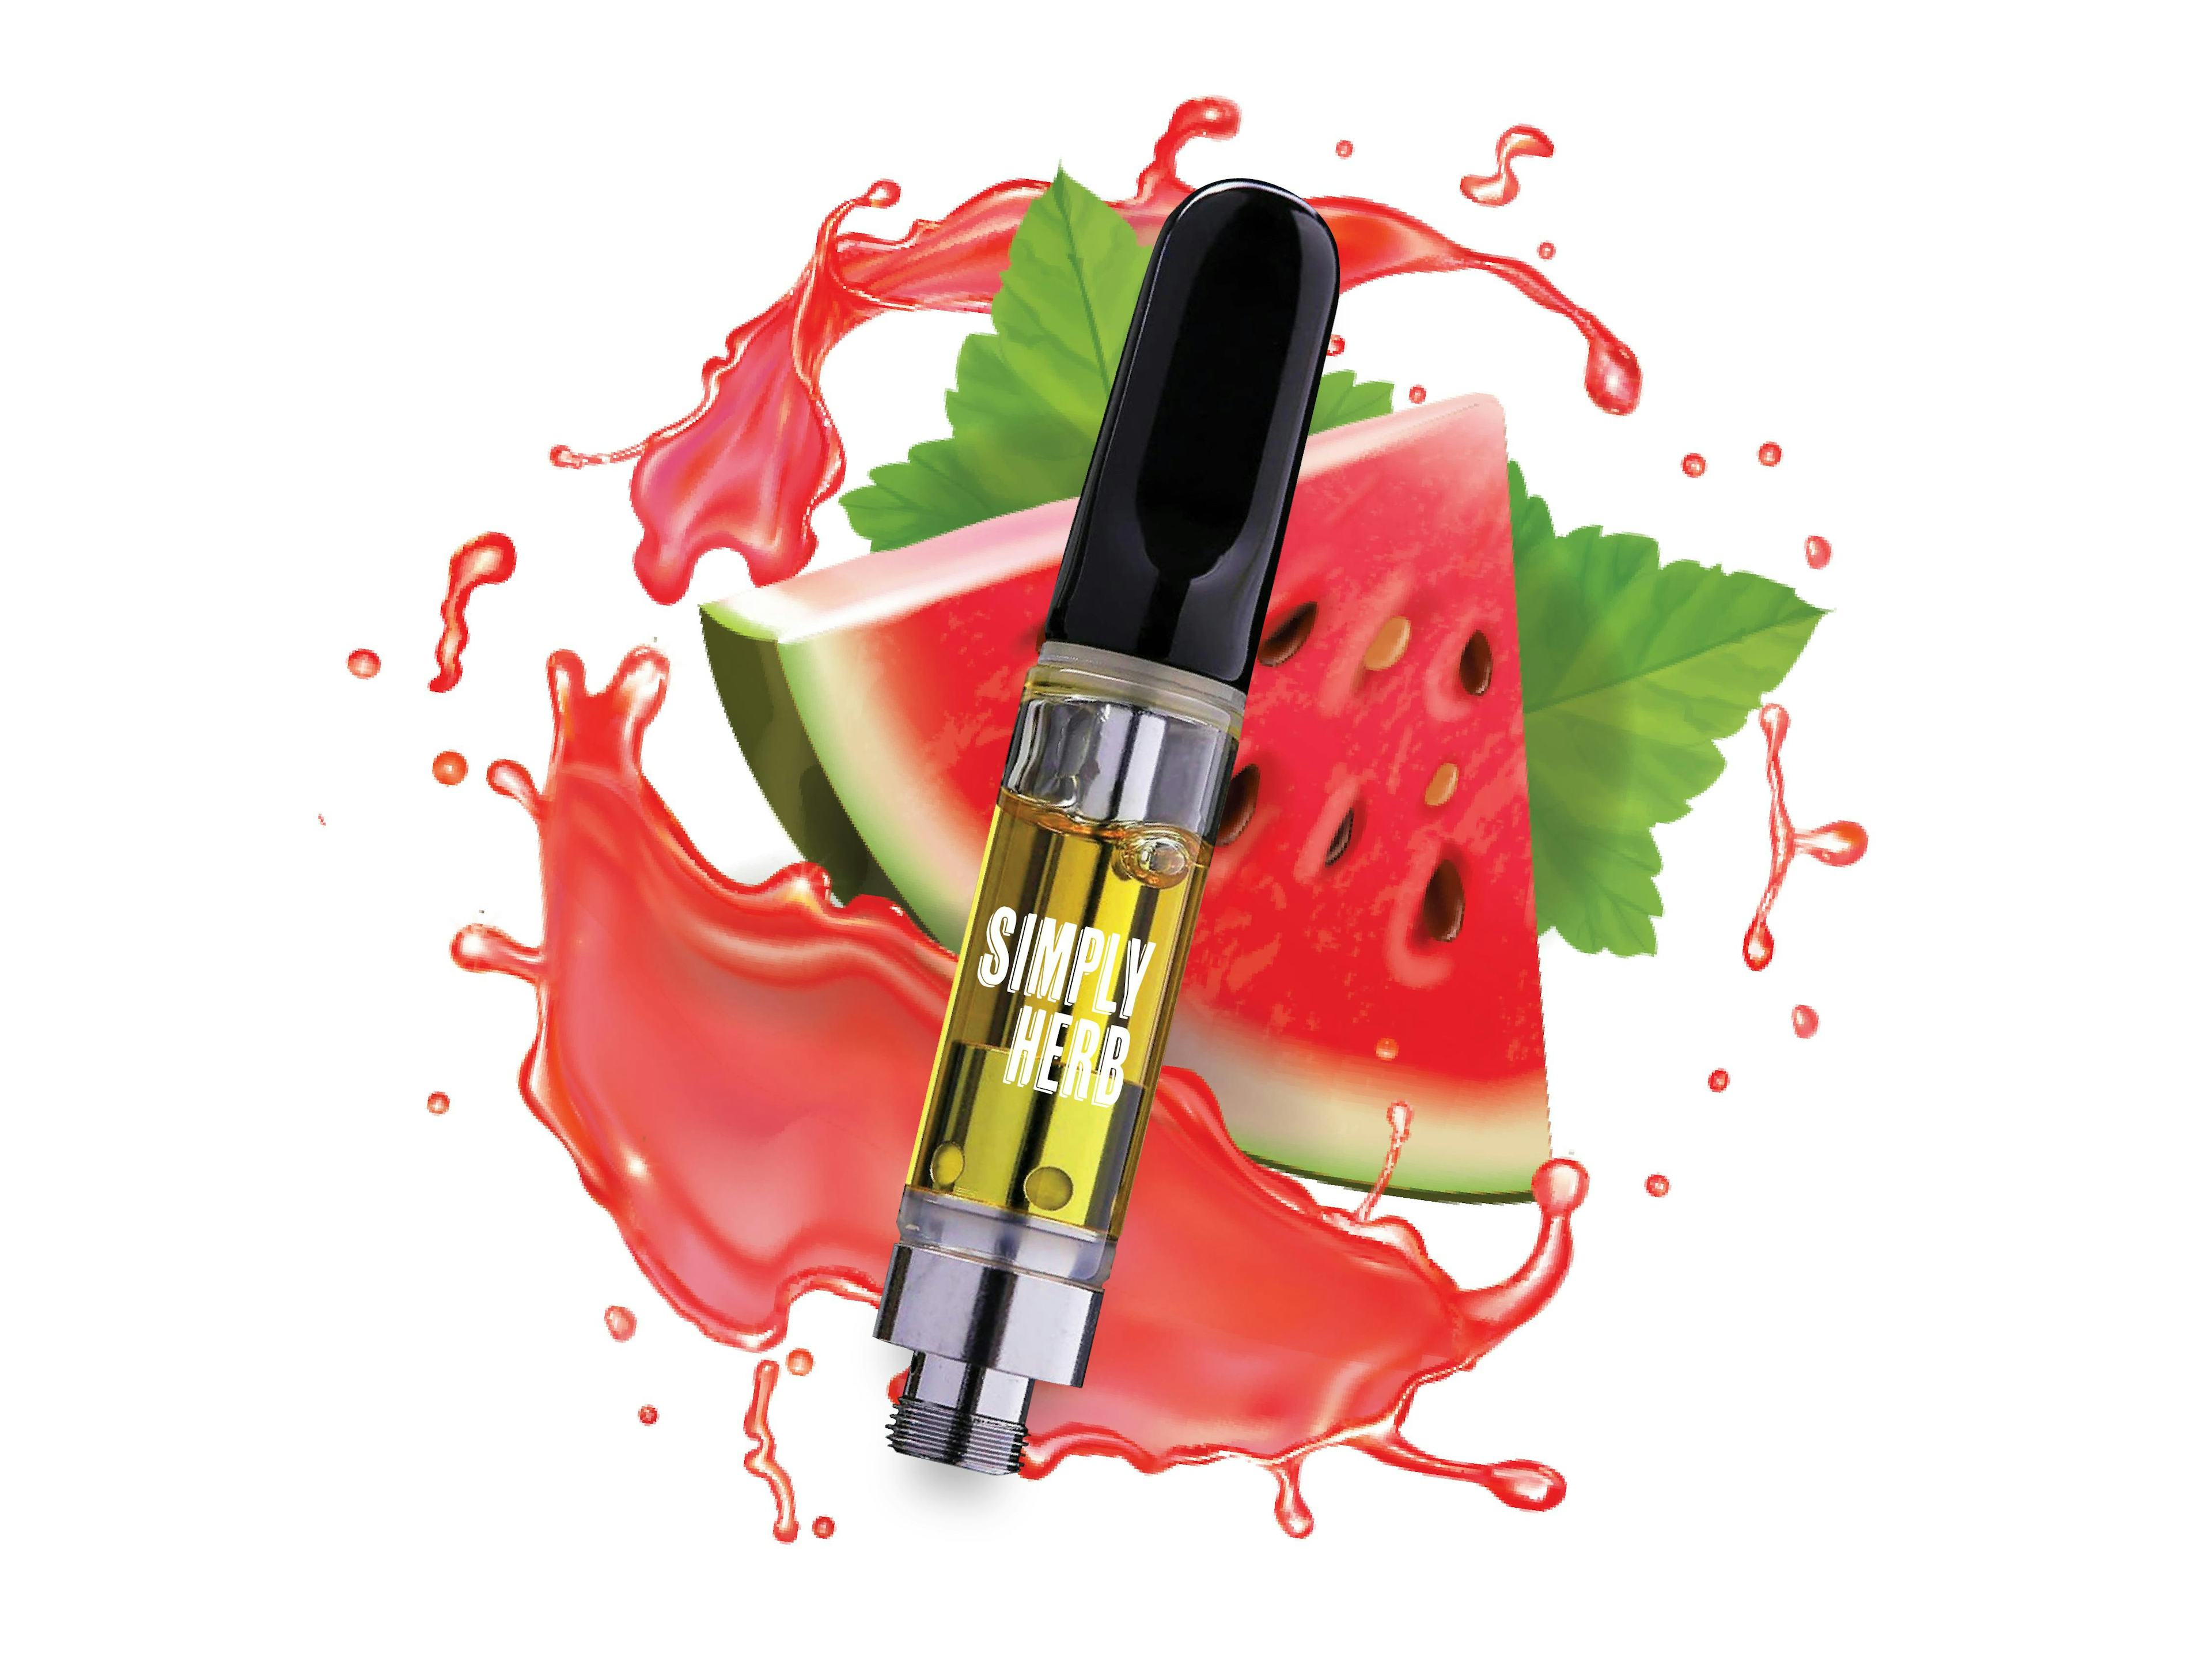 Watermelon Sugar (H) | Simply Herb | 1.0g 510 Cartridge